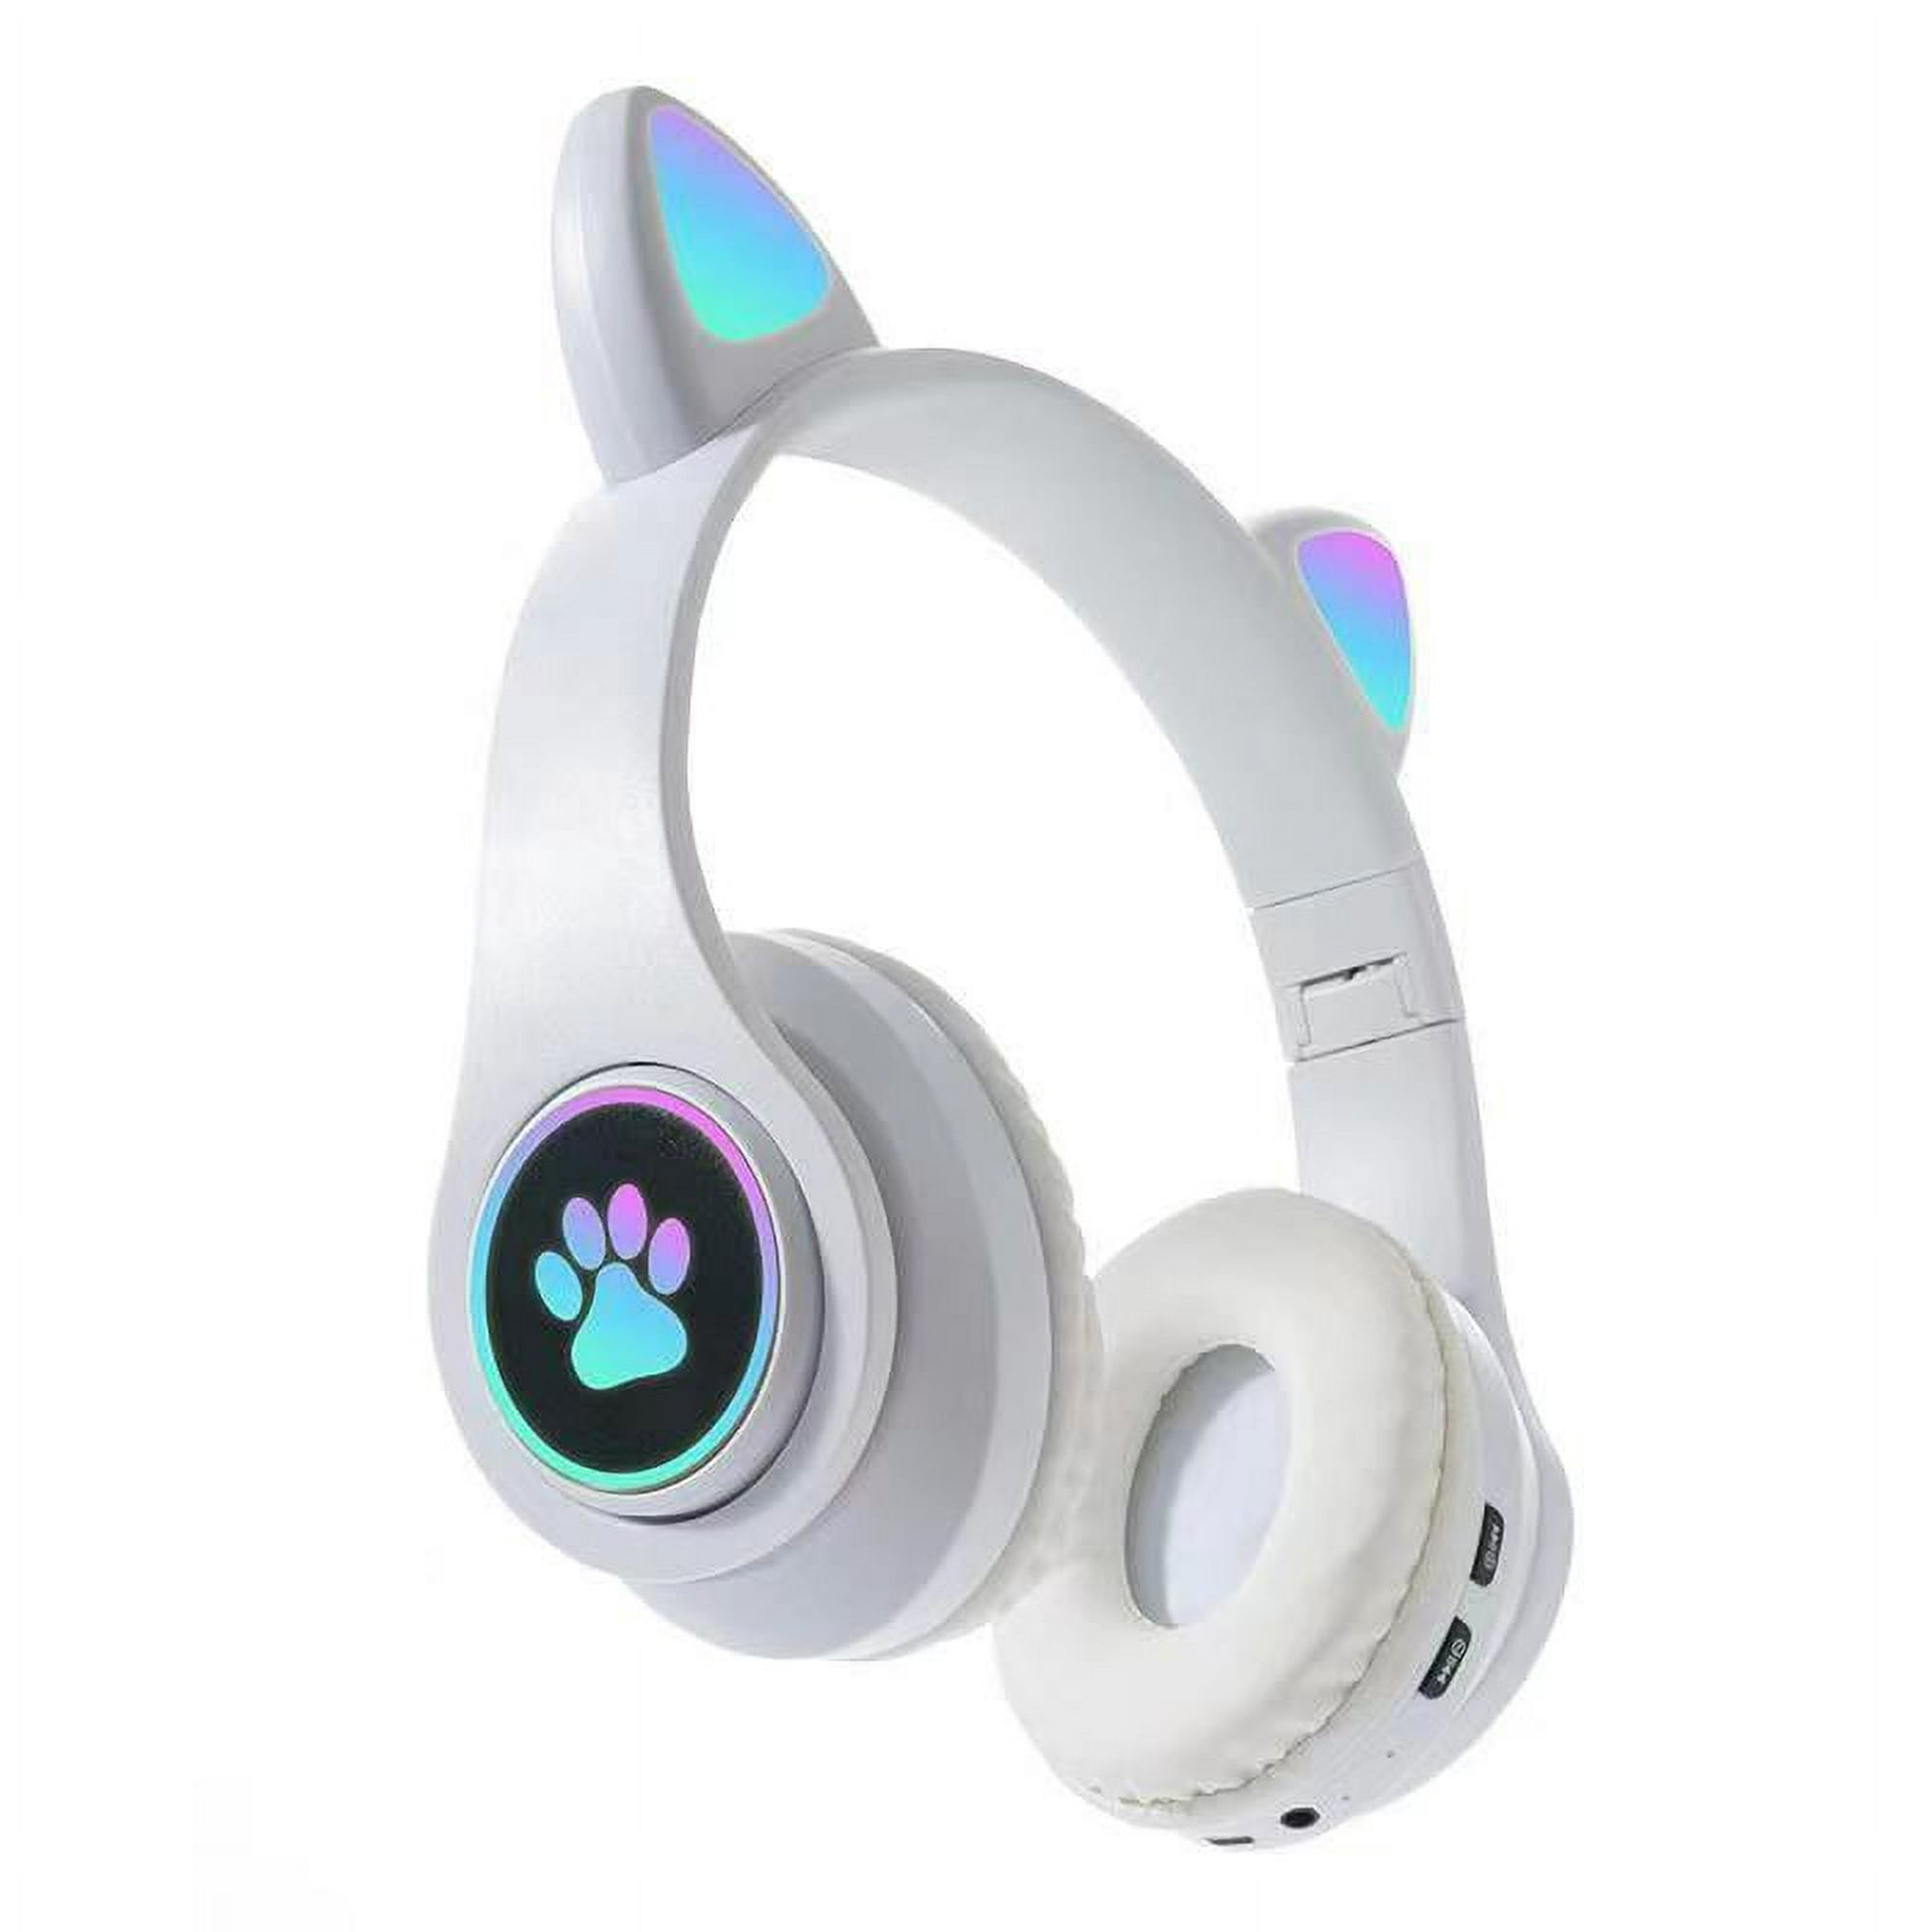  Auriculares inalámbricos para canales auditivos pequeños, auriculares  Bluetooth de colores lindos, llamada inteligente de reducción de ruido,  auriculares de conexión de alta calidad con sonido inmersivo de larga  distancia, impermeable IPX4 (